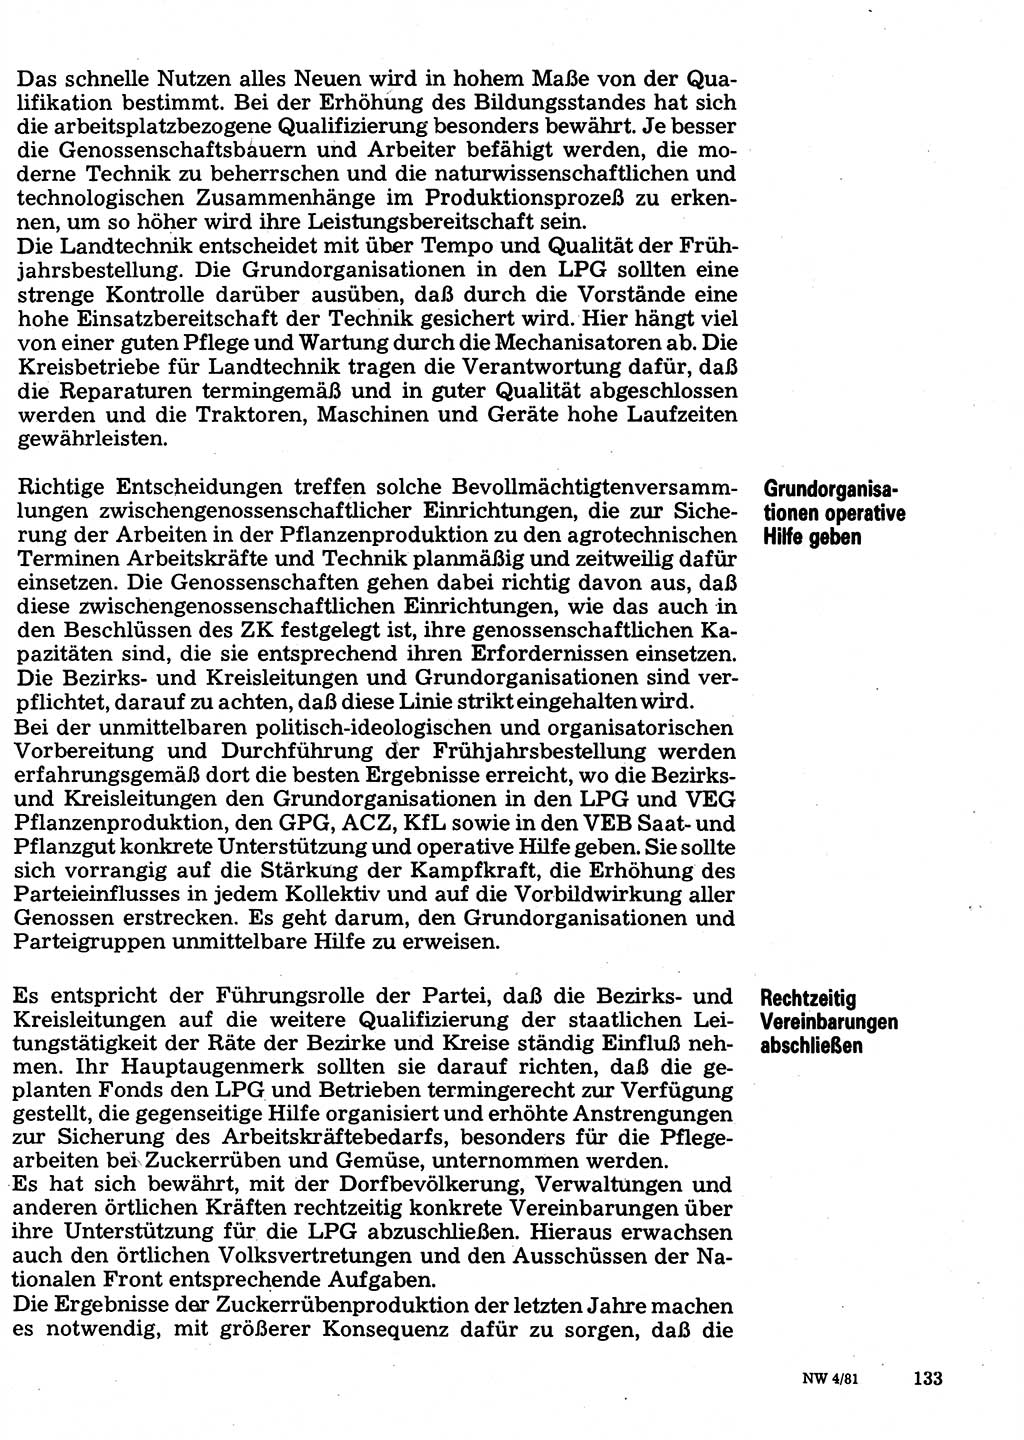 Neuer Weg (NW), Organ des Zentralkomitees (ZK) der SED (Sozialistische Einheitspartei Deutschlands) für Fragen des Parteilebens, 36. Jahrgang [Deutsche Demokratische Republik (DDR)] 1981, Seite 133 (NW ZK SED DDR 1981, S. 133)